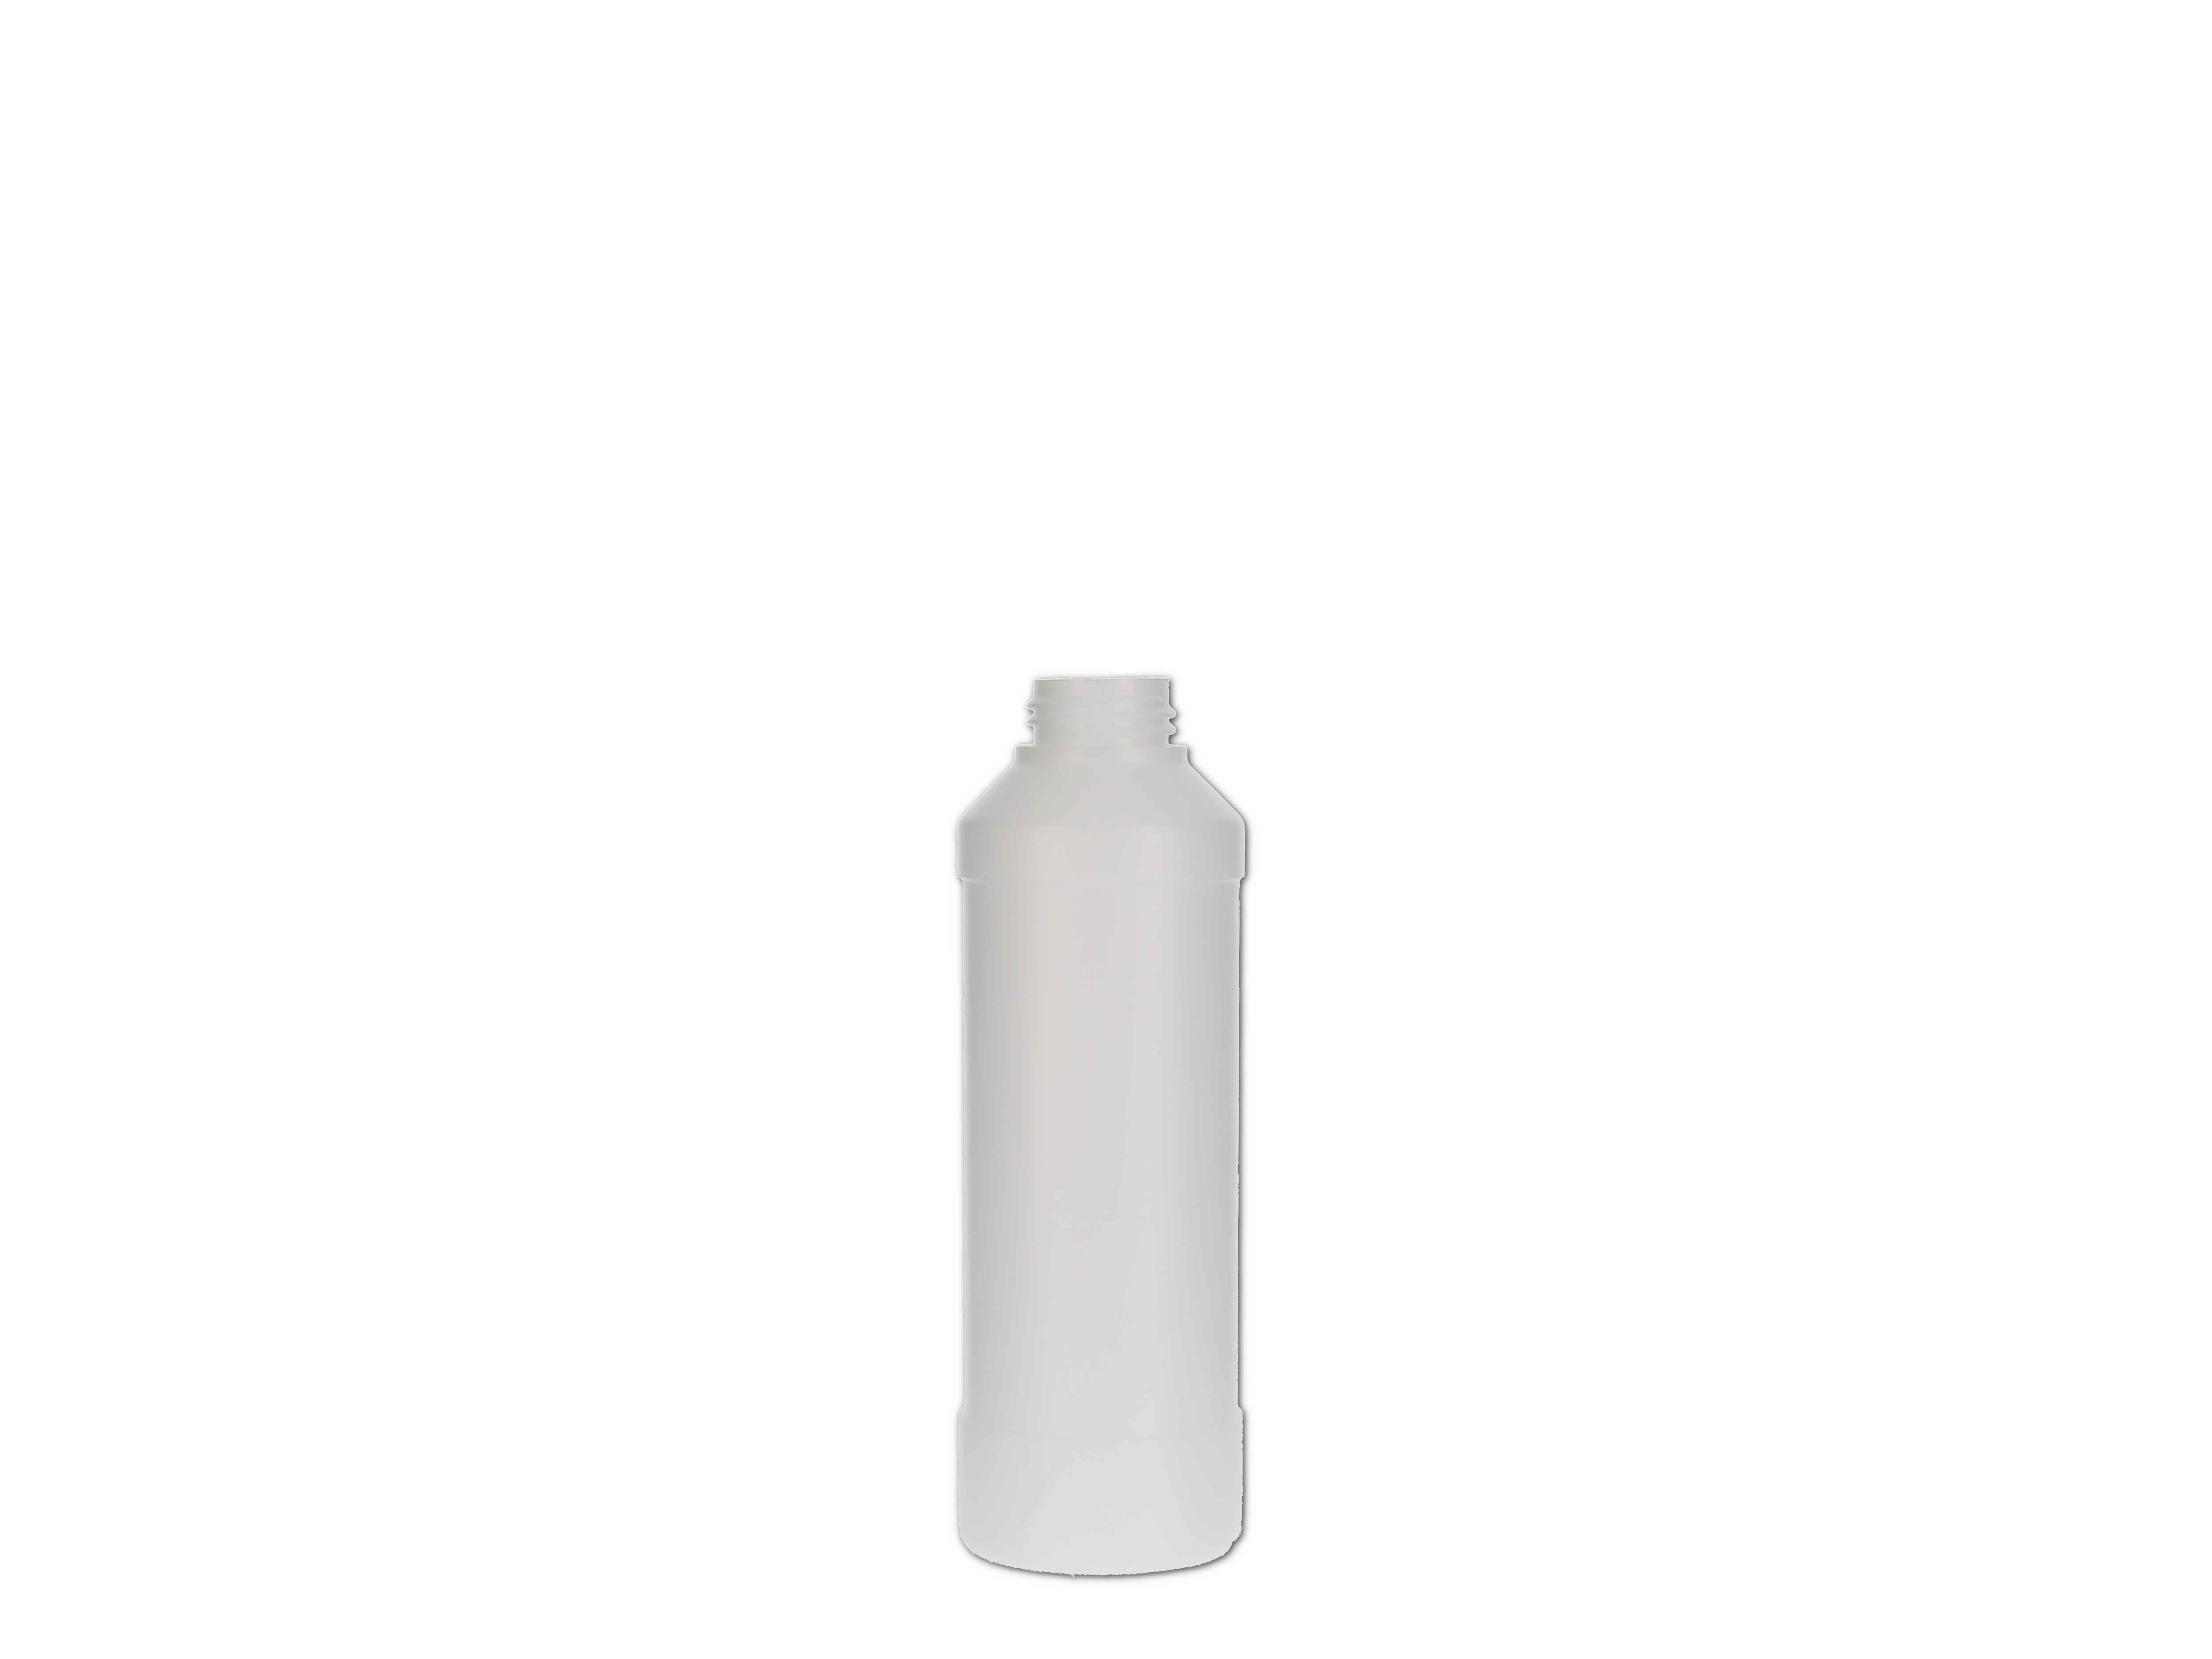    Kunststoff-Flasche rund, ohne Verschluss - 250ml